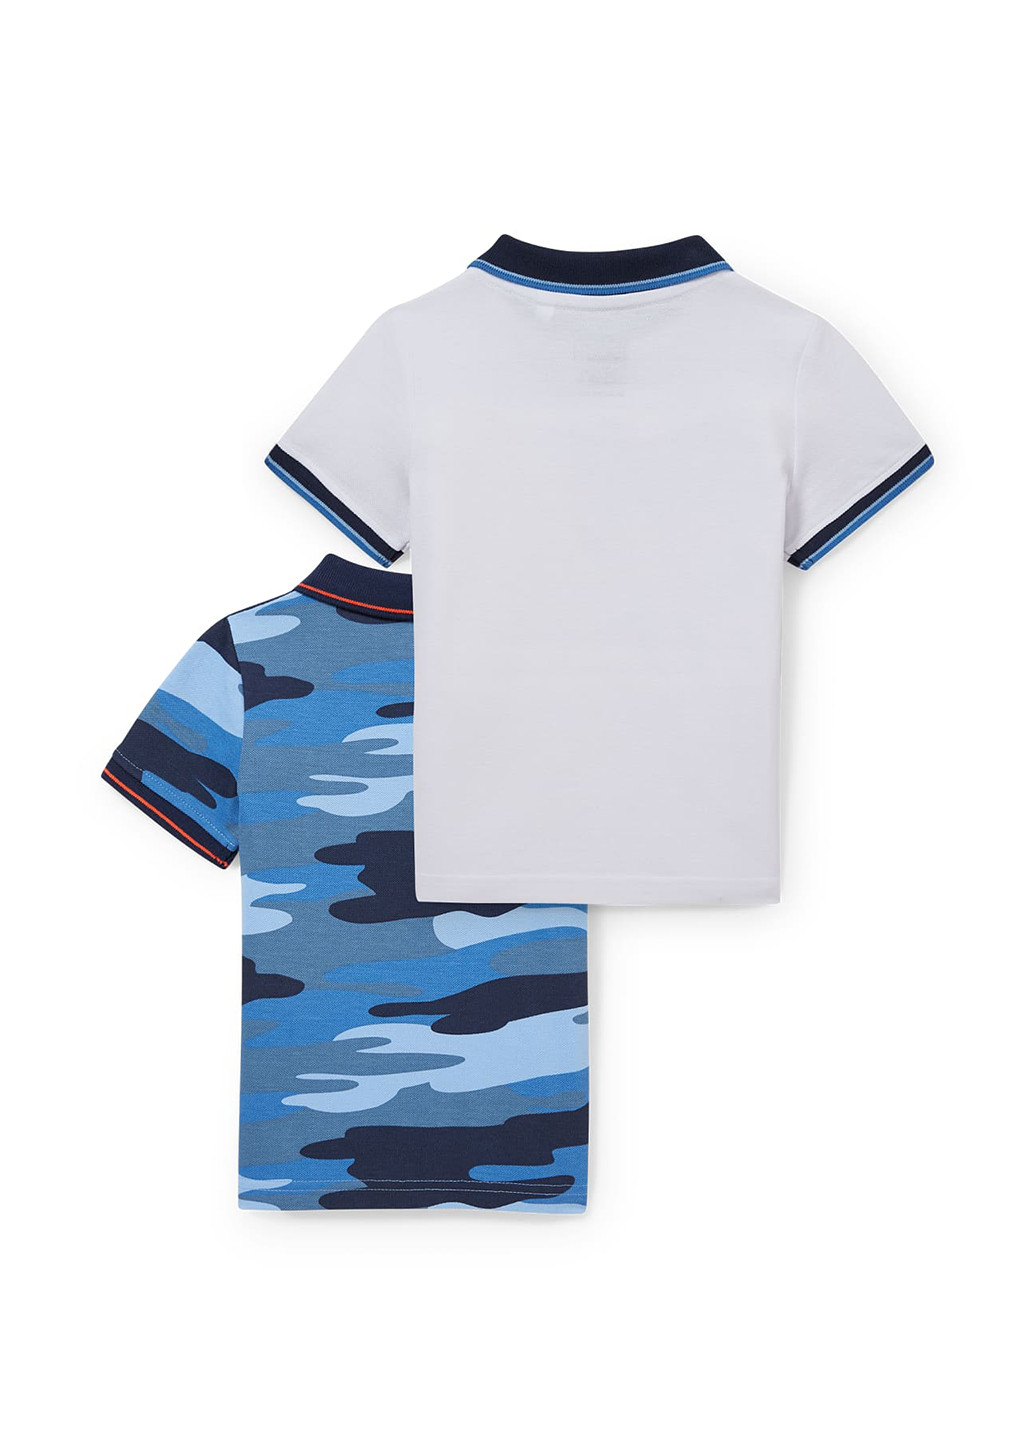 Цветная детская футболка-поло (2 шт.) для мальчика C&A с камуфляжным принтом